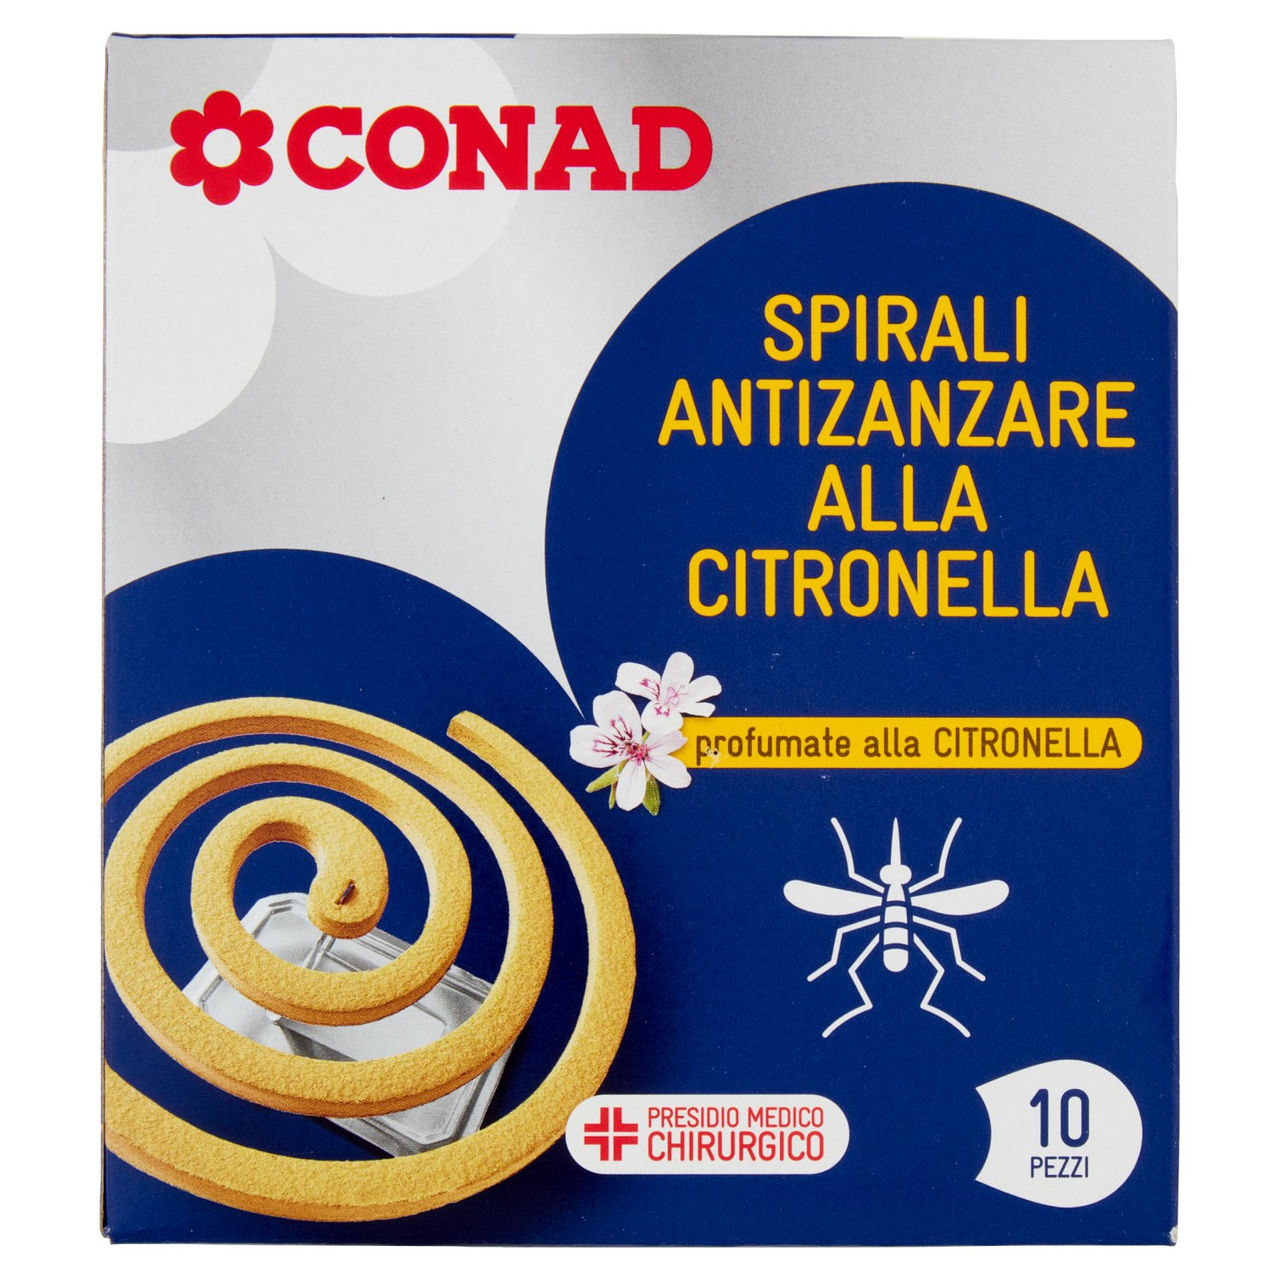 Spirali Antizanzare alla Citronella 10 Pezzi